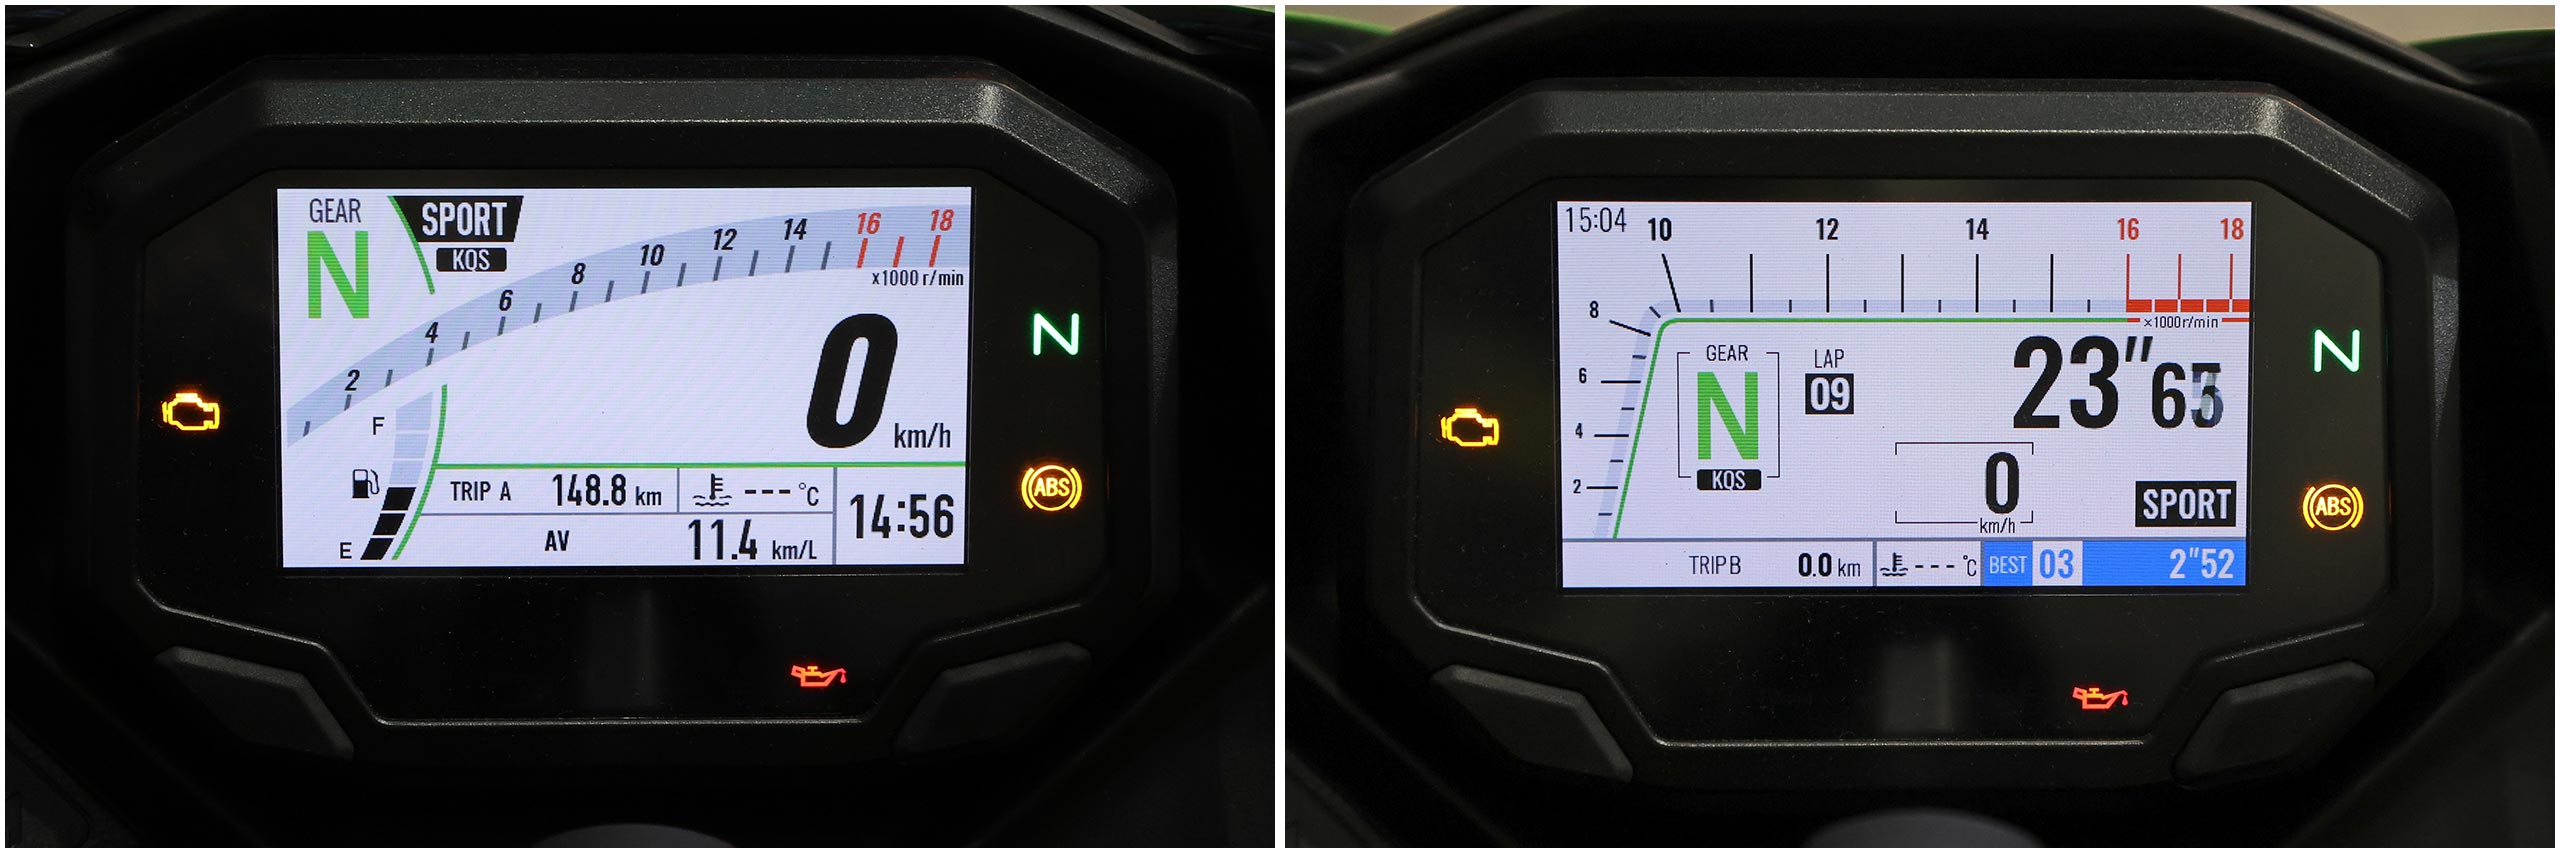 新型Ninja ZX-25R SEと同じく、ノーマルとサーキットに表示モードを切り替えられる4.3インチTFTカラー液晶メーターを搭載。背景色を白と黒から選べ、専用アプリでスマホ連携も可能